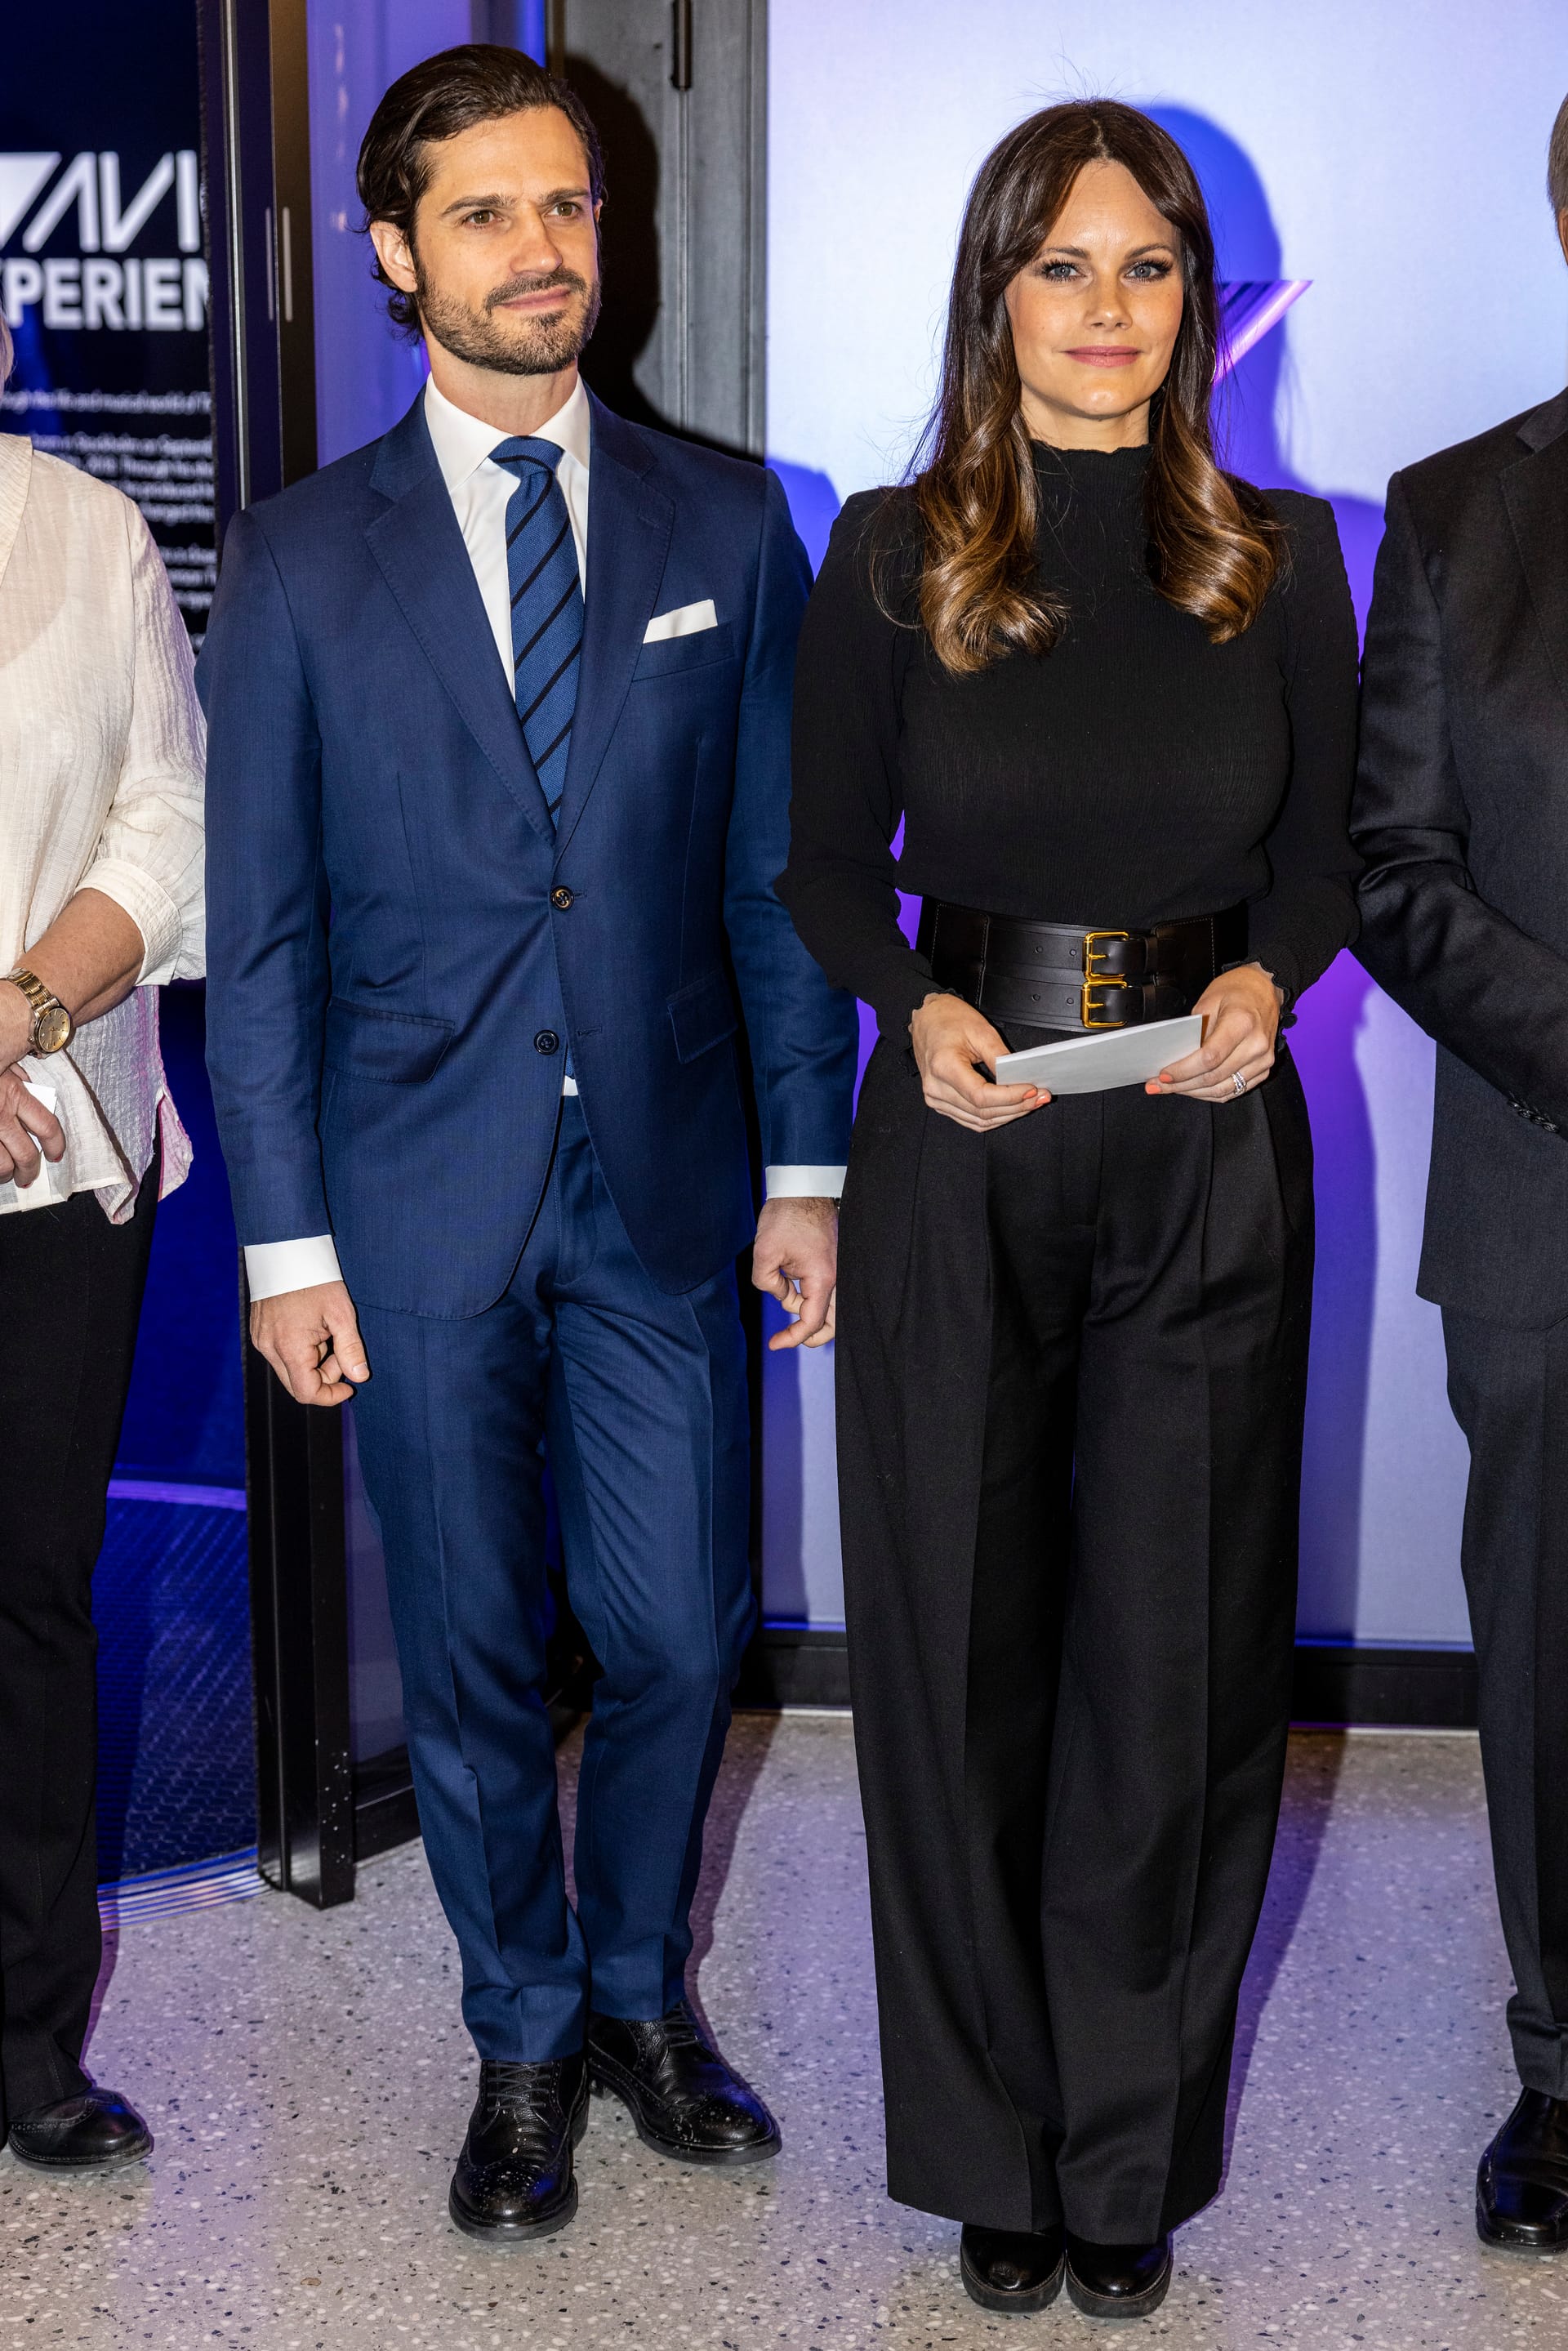 Prinzessin Sofia und Prinz Carl Philip zeigten sich bei einem Event.